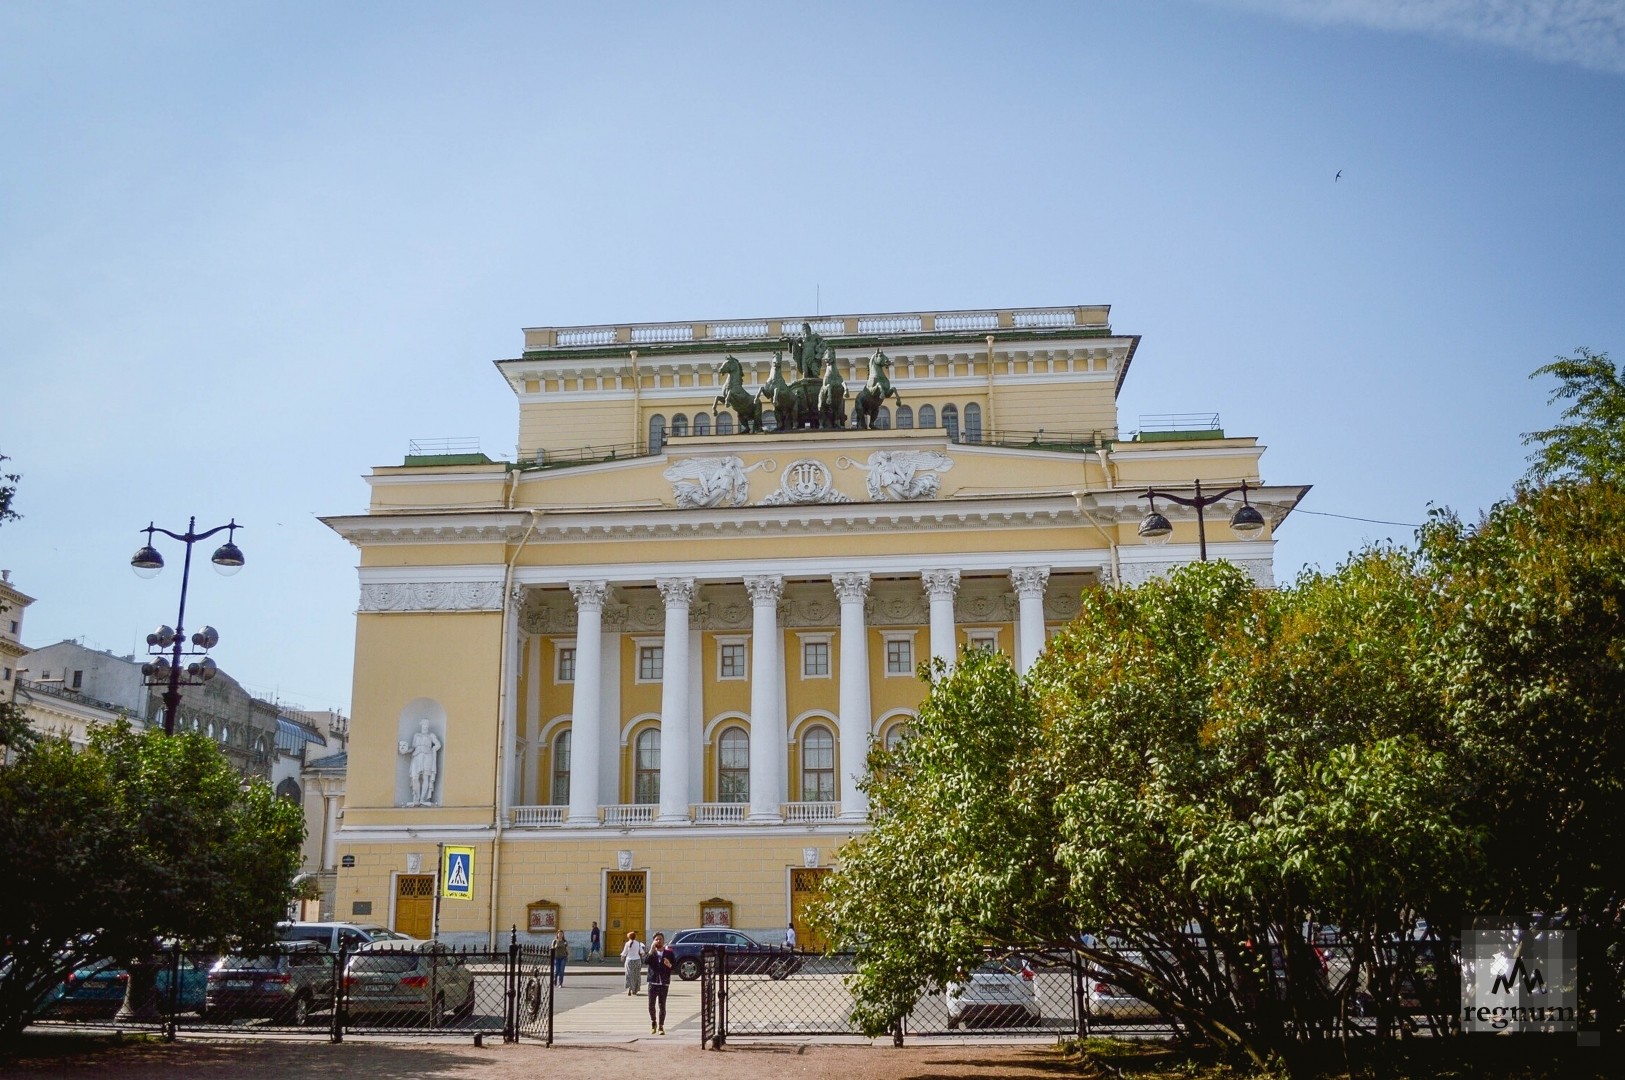 александровский театр петербург